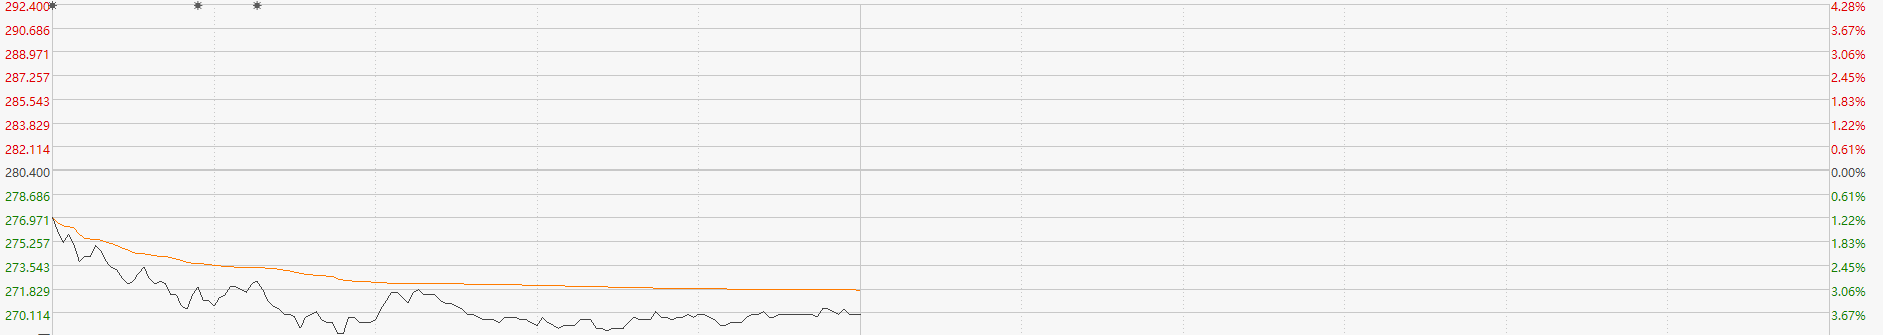 騰訊大股東恢復減持 近一月拋售八千萬股 企鵝股價能否經受住考驗？